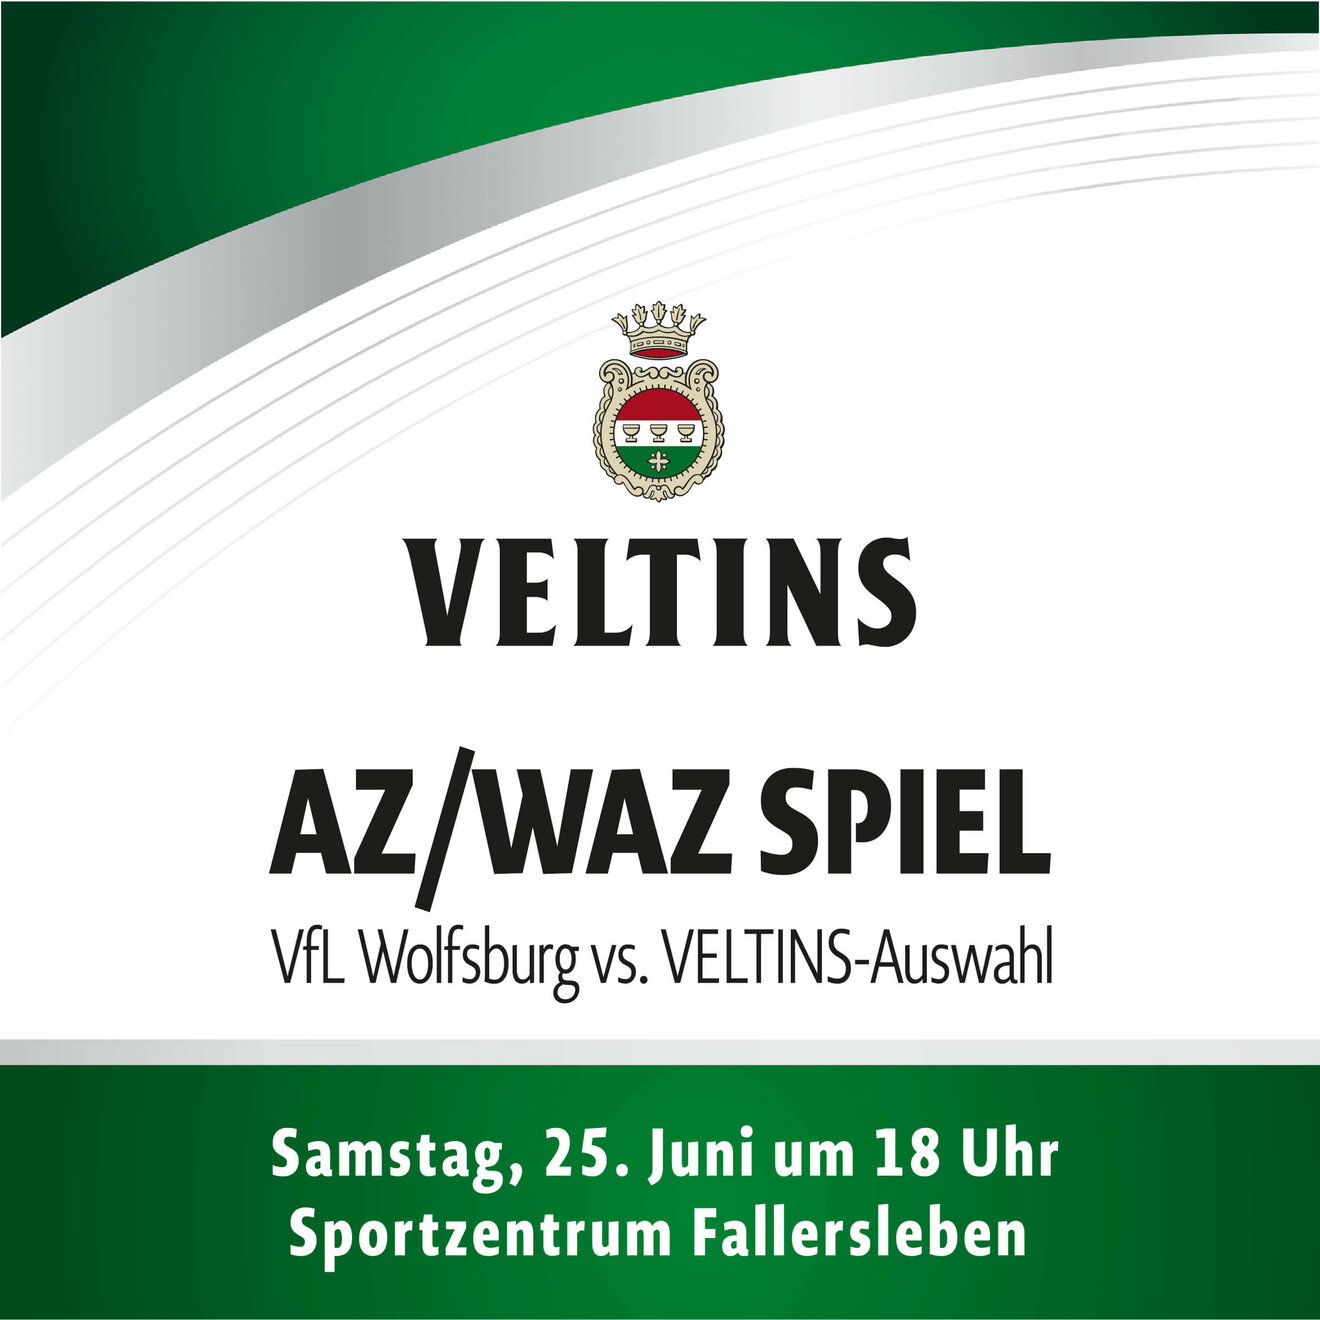 VfL Wolfsburg vs Veltins-Auswahl Spielankündigungsgrafik.